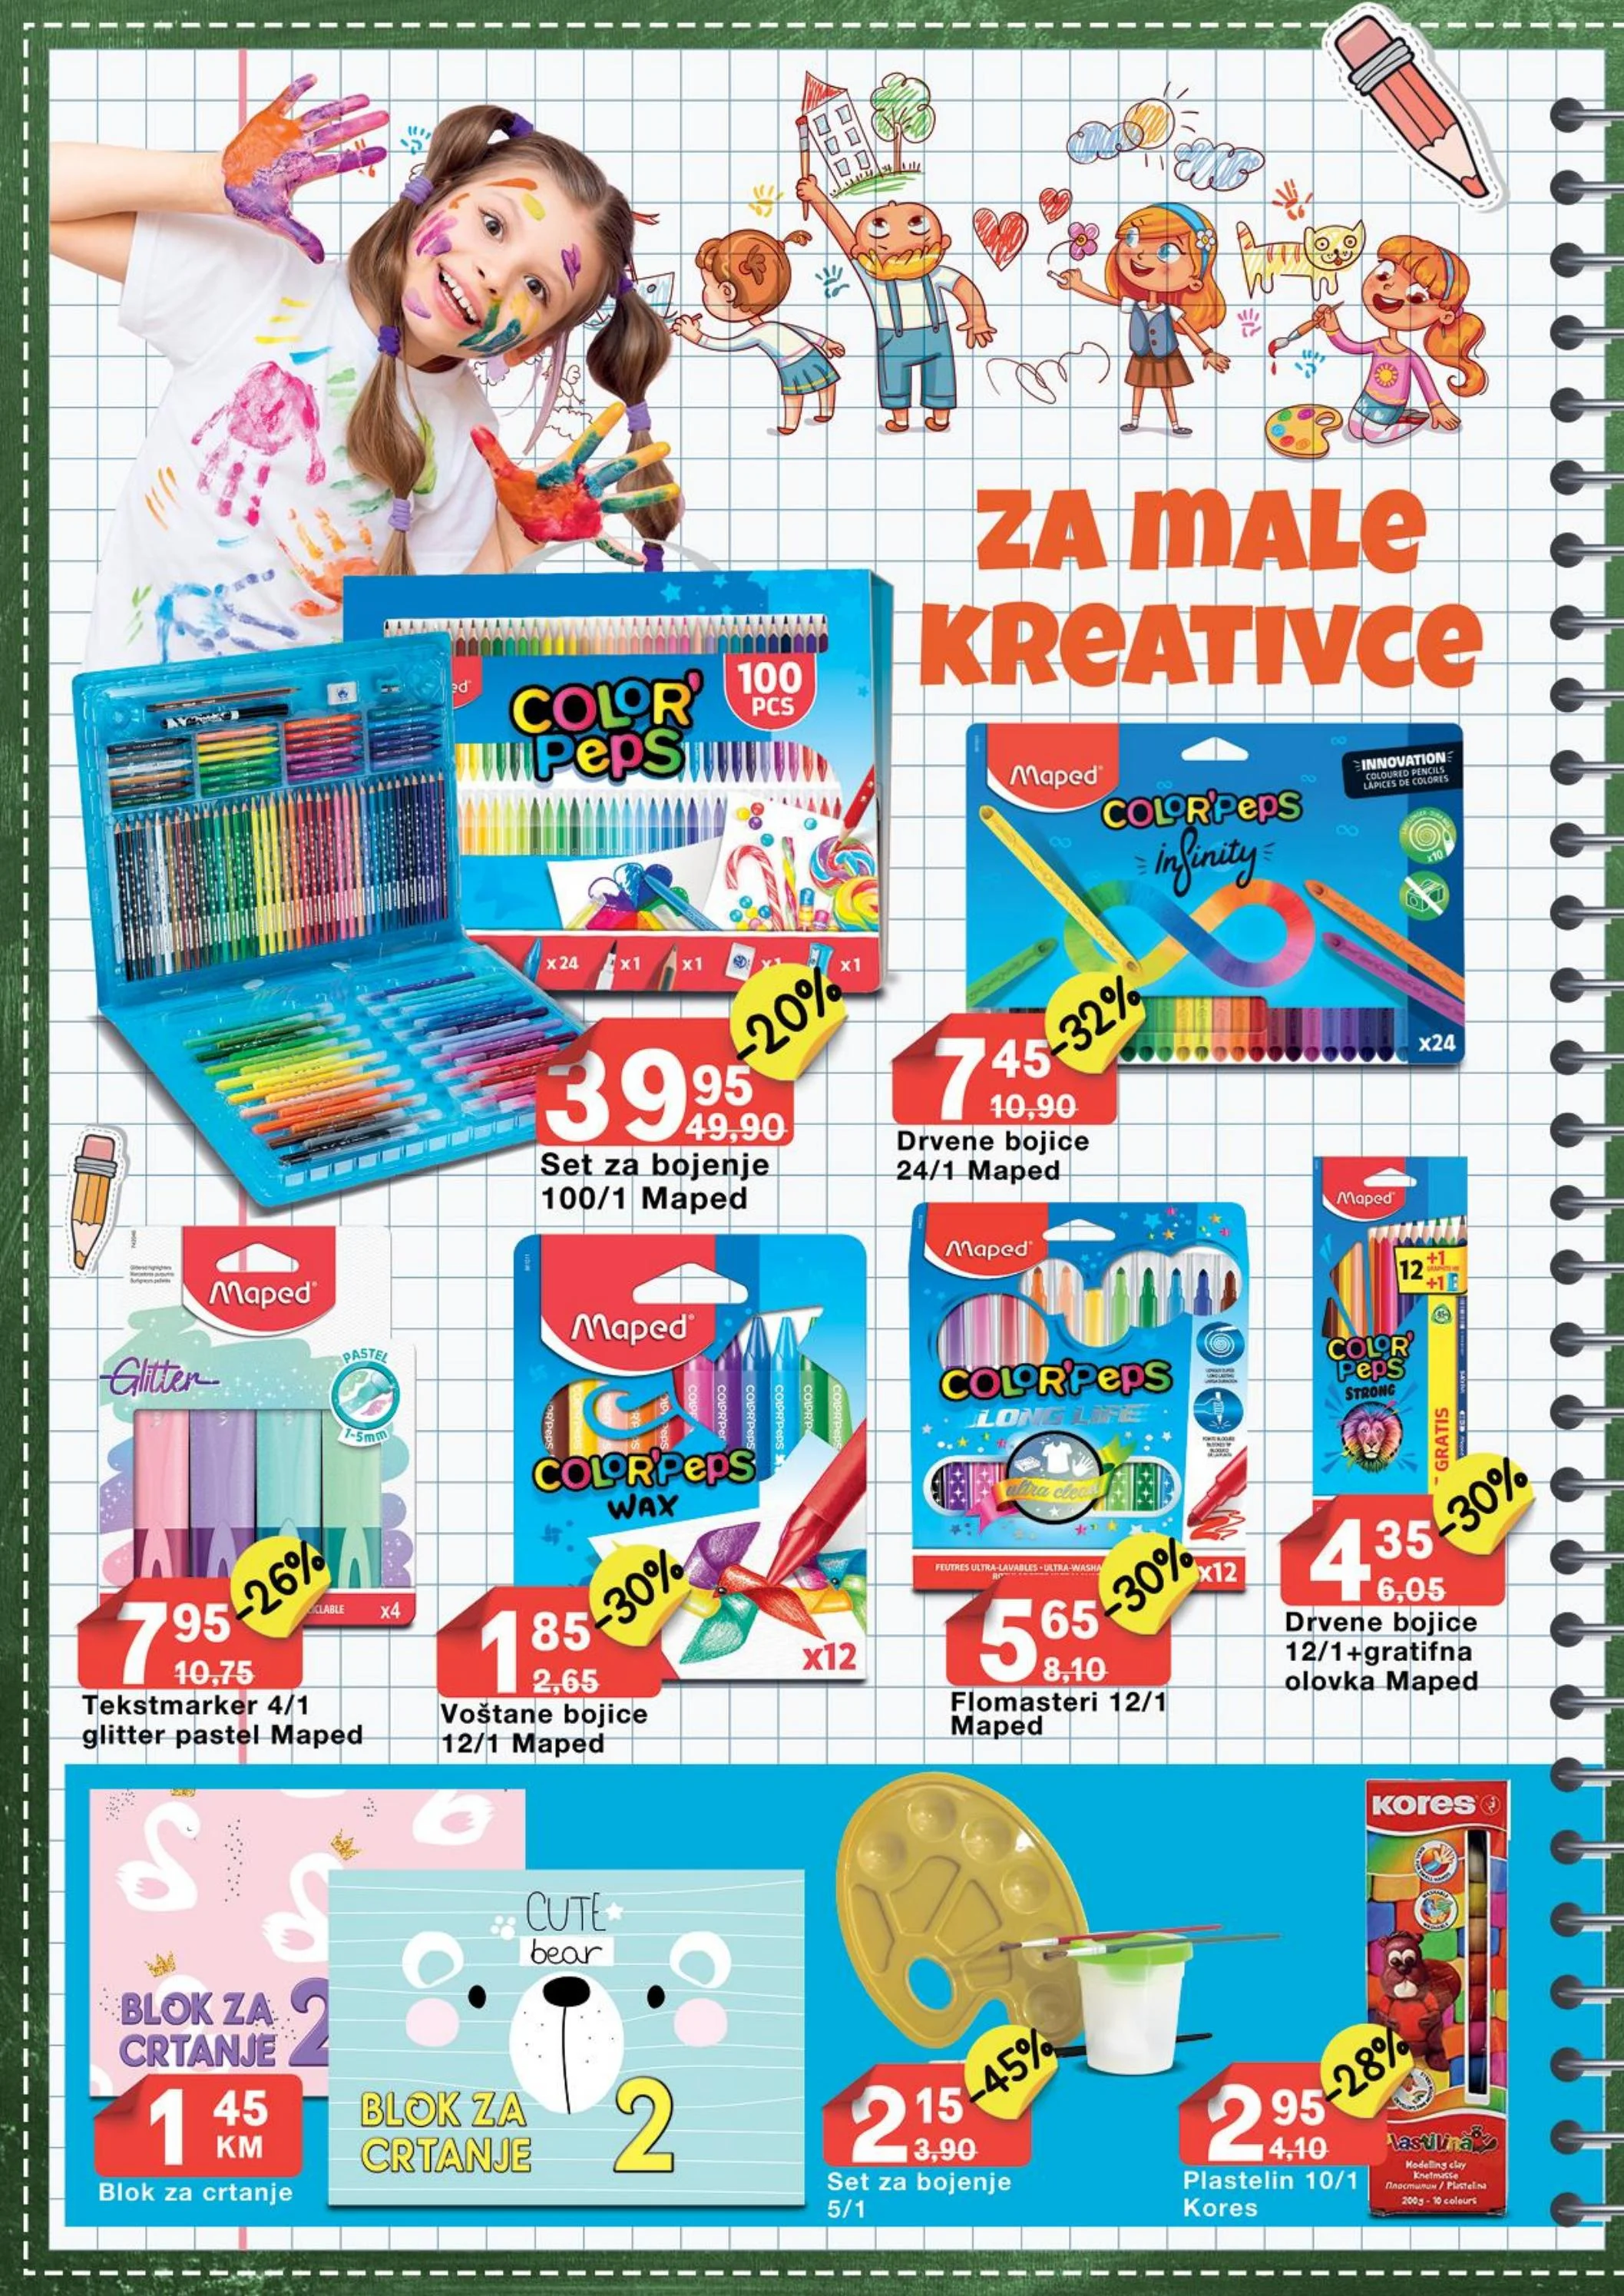 Bingo katalog PREDŠKOLSKA AVANTURA 1-30.4.2024.